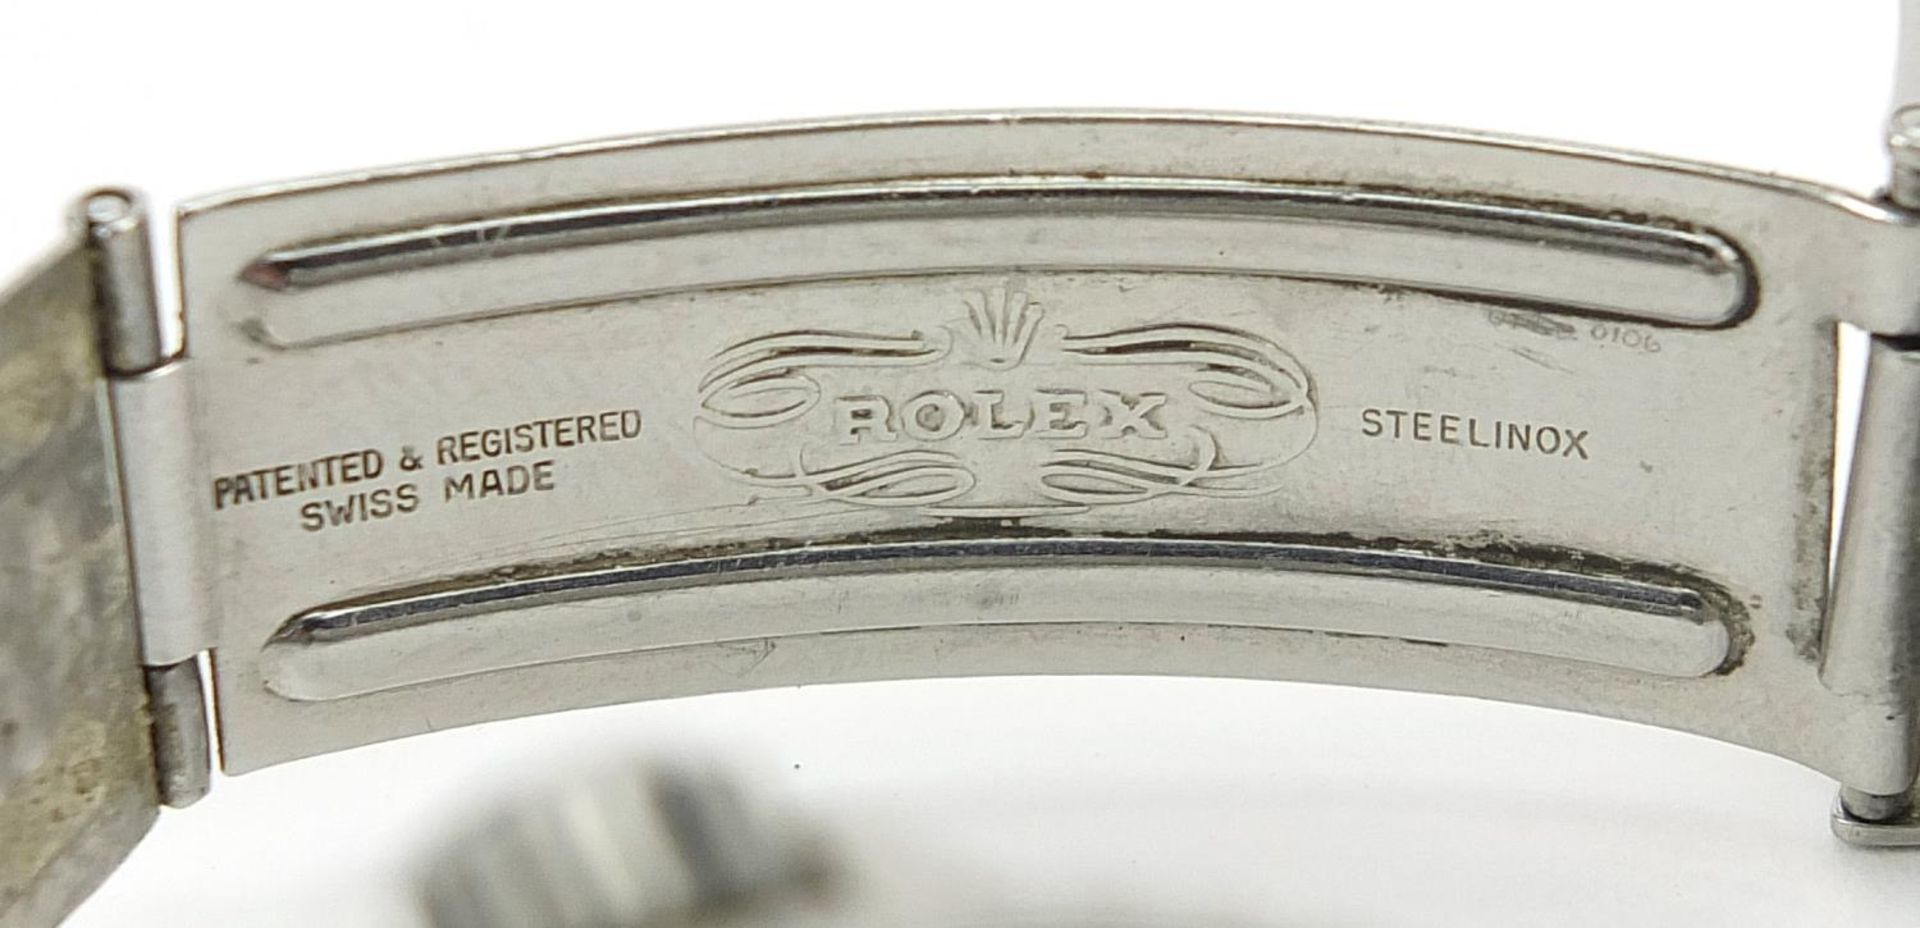 Rolex gentlemen's Submariner automatic wristwatch, ref 5513, serial number 1005684, 40mm in diameter - Bild 9 aus 9